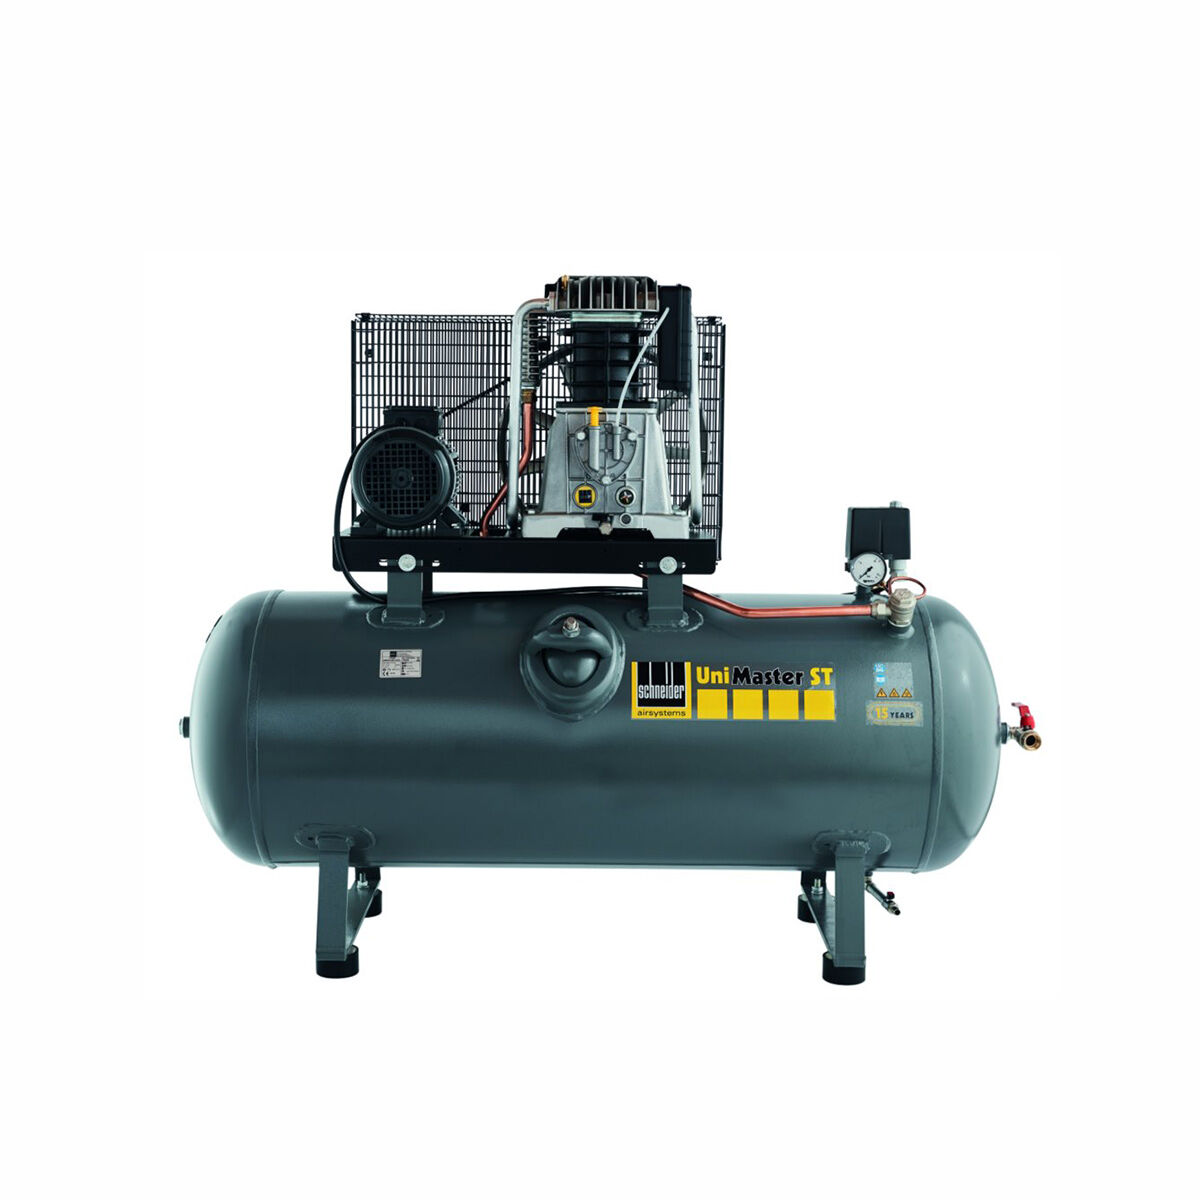 Schneider-Kompressor UNM STL 780-15-500 1121580521